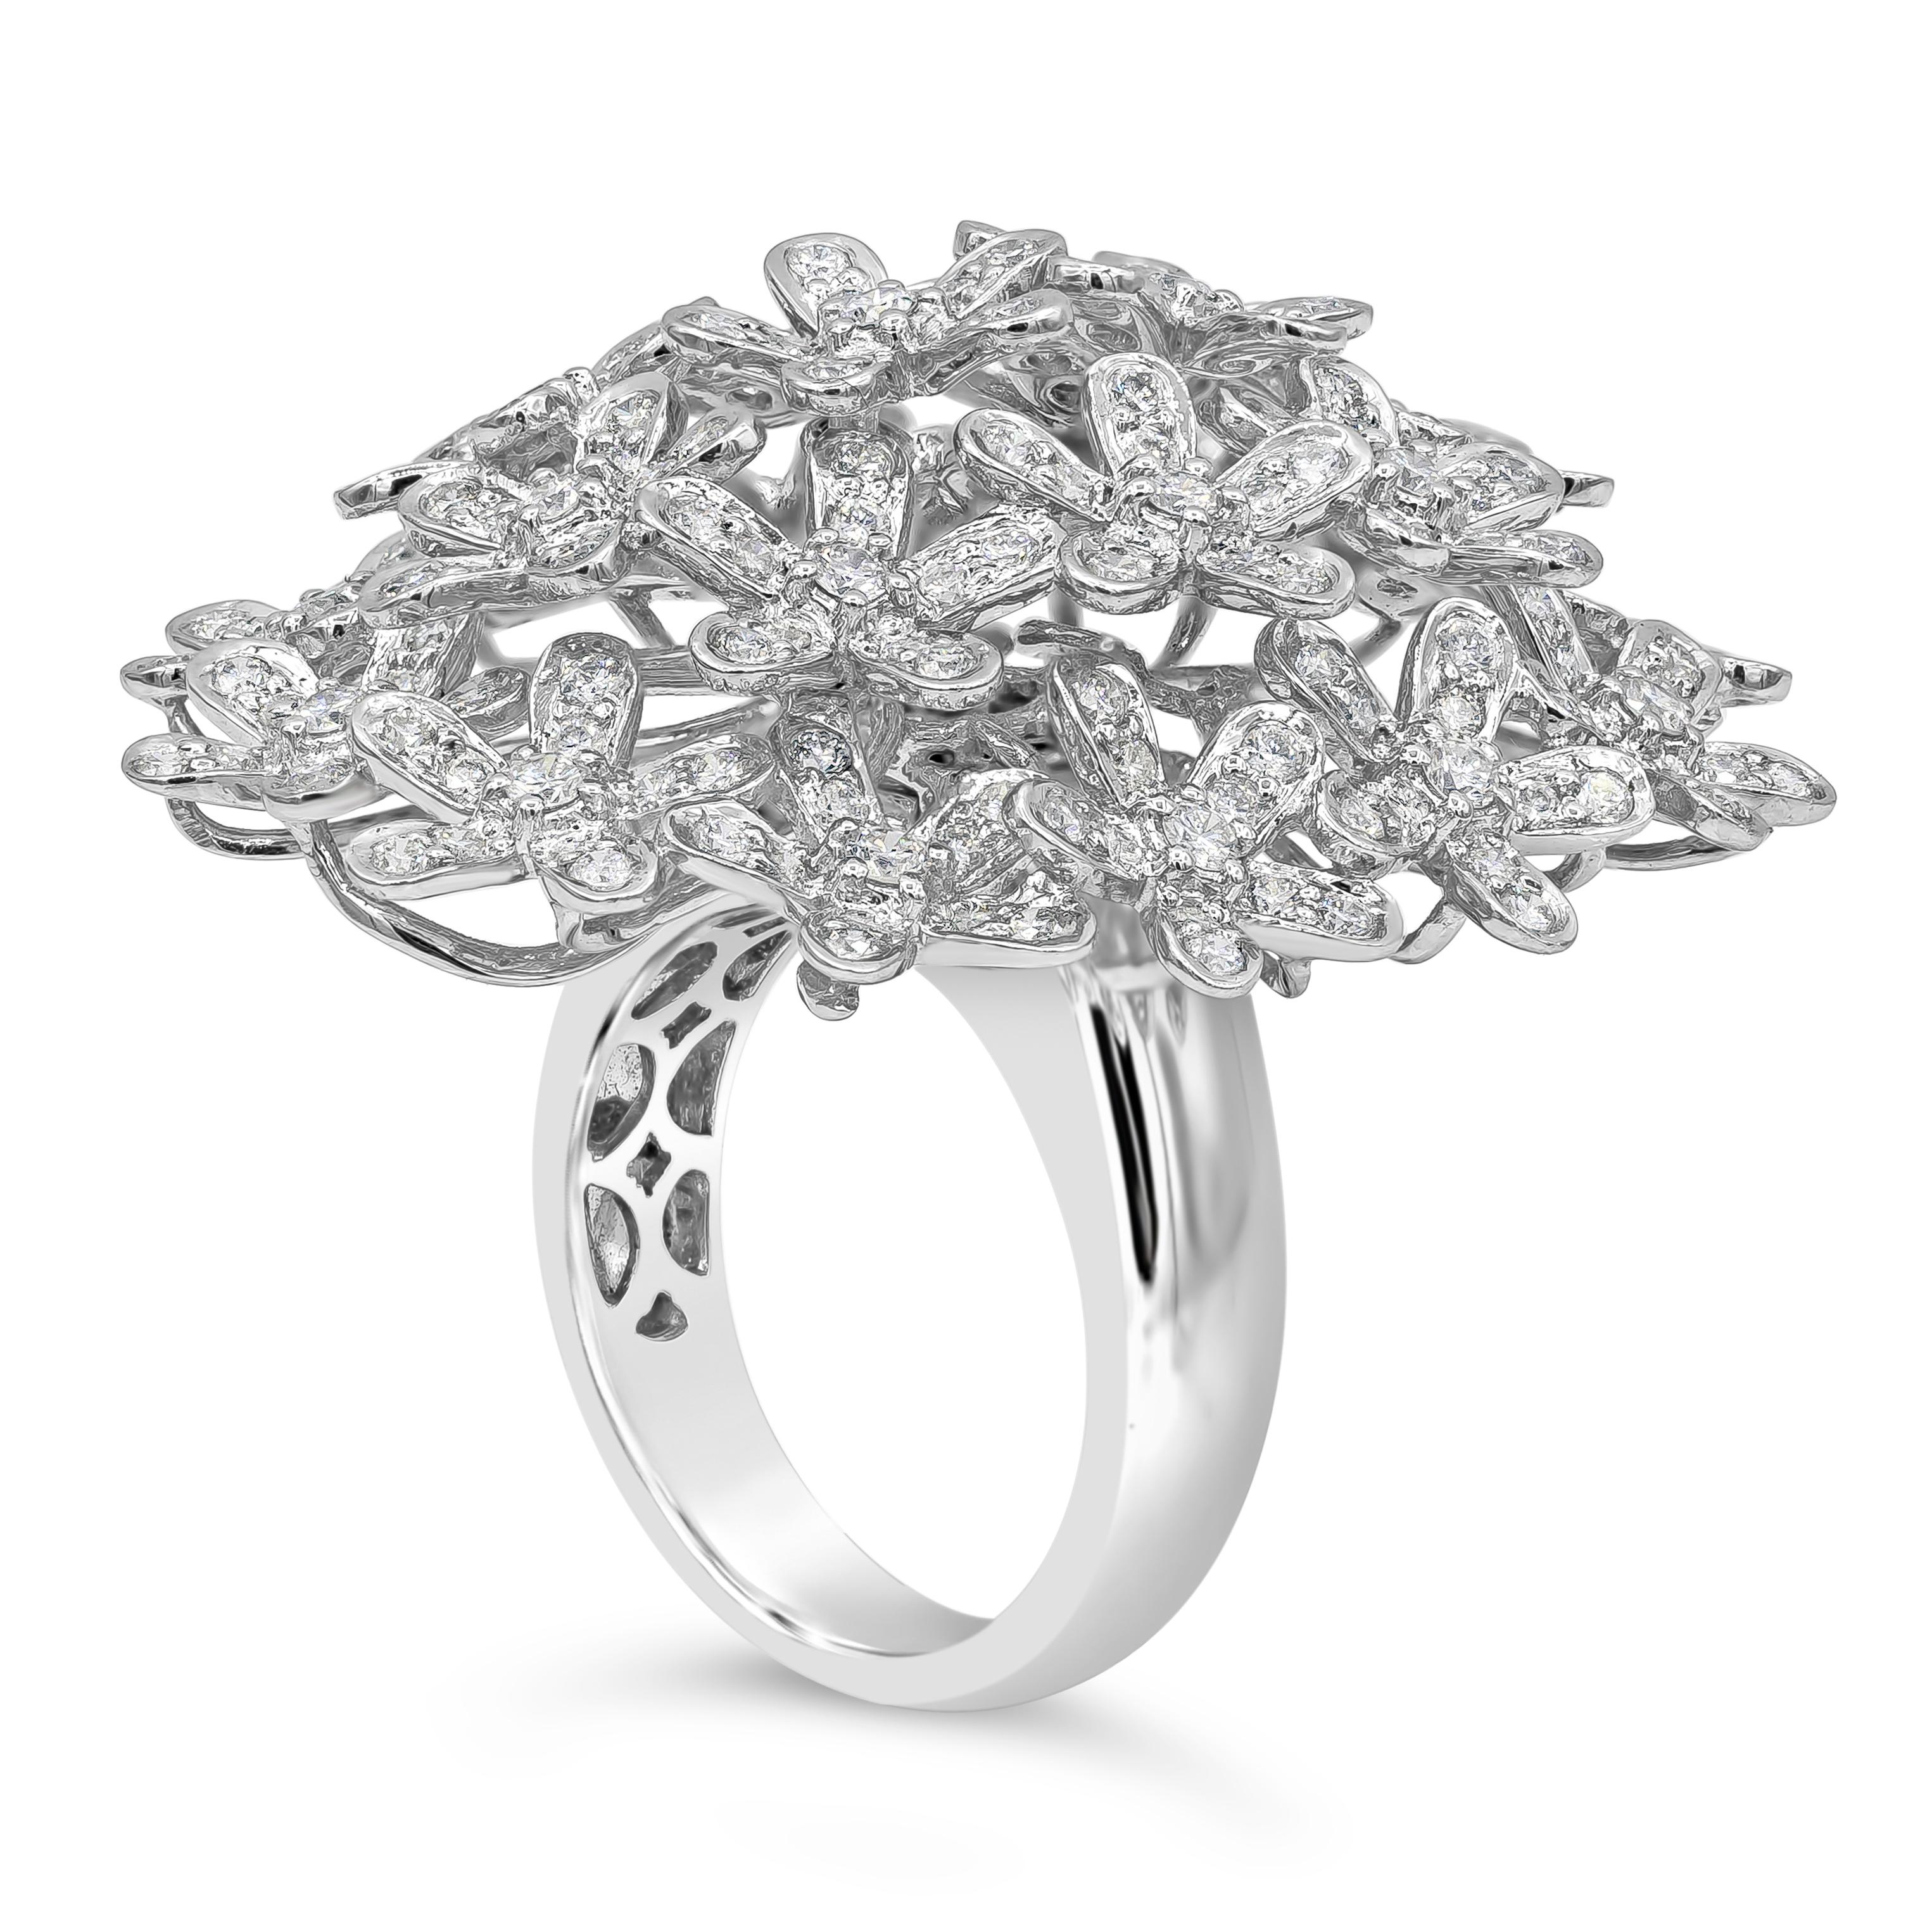 Dieser modische und stilvolle Modering präsentiert 242 Diamanten im Brillantrundschliff mit einem Gesamtgewicht von 3,06 Karat, die in einem durchbrochenen Blumenmotiv gefasst sind. Die Diamanten sind fein in eine Fassung aus 18 Karat Weißgold